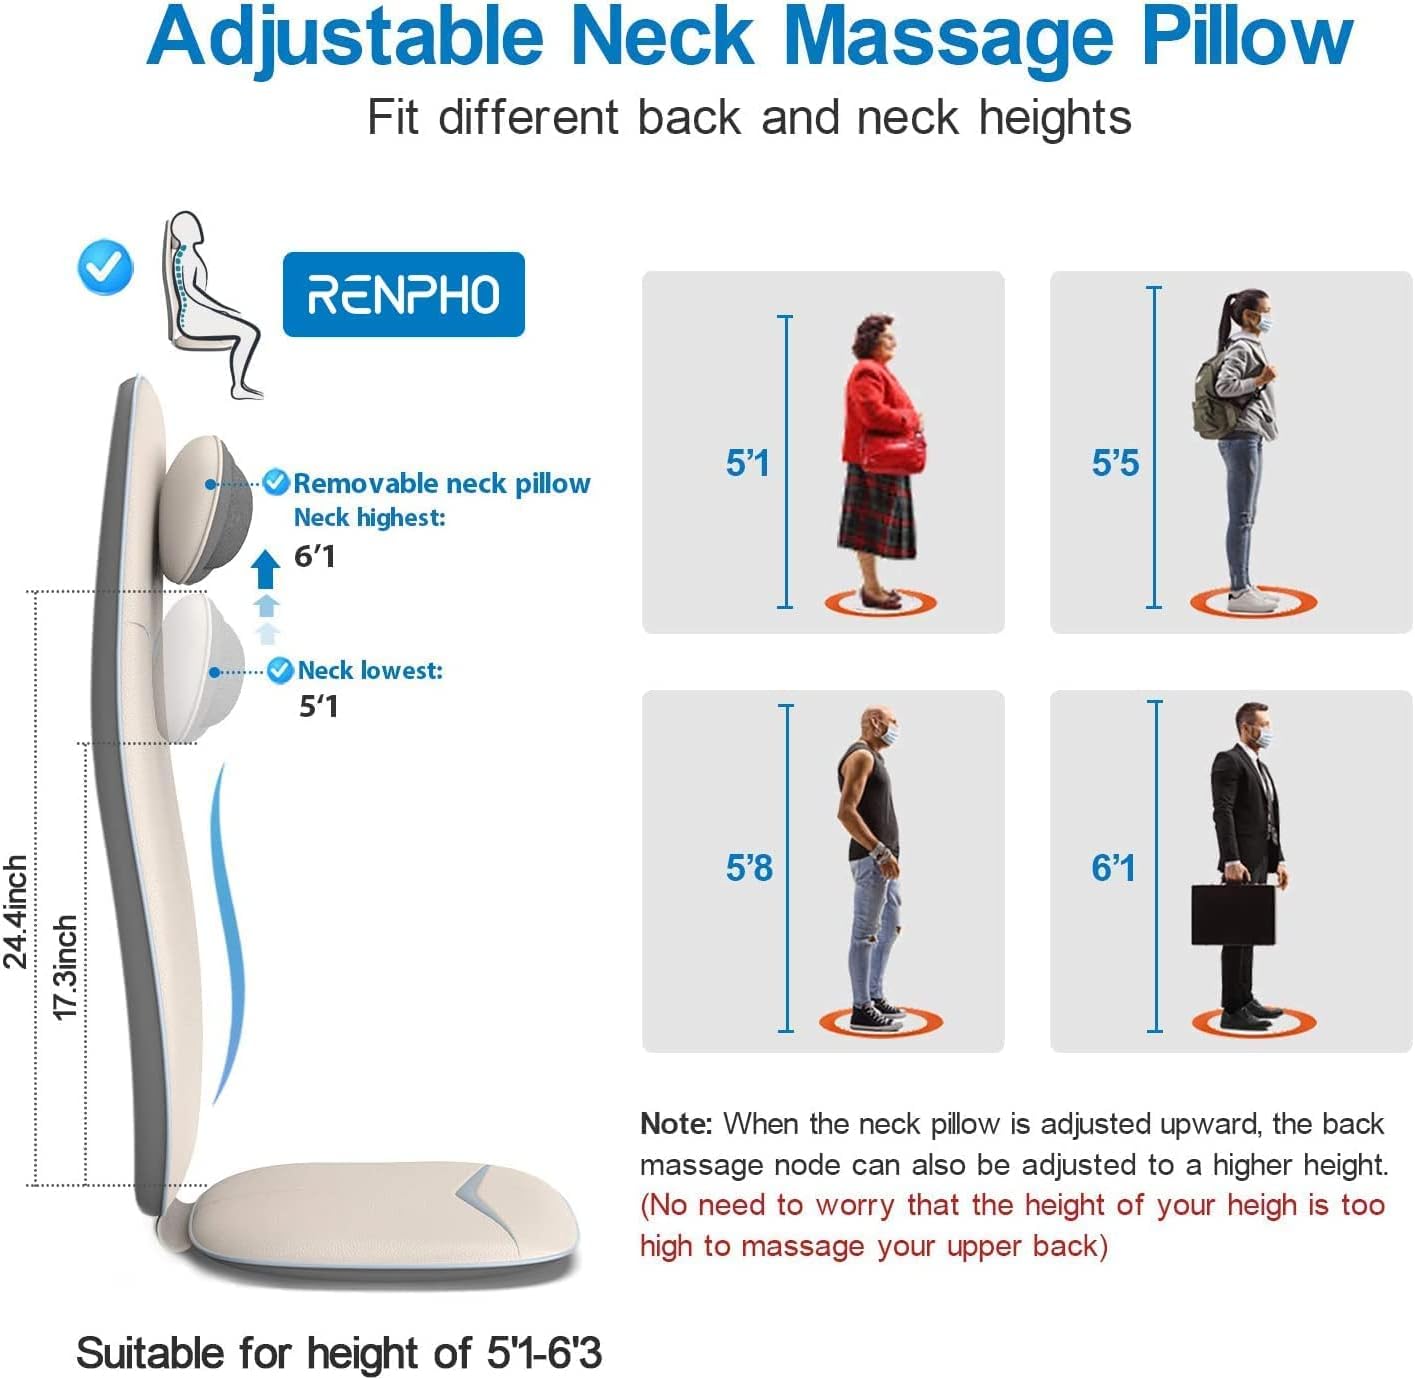 Shiatsu Neck & Back Seat Massage Chair